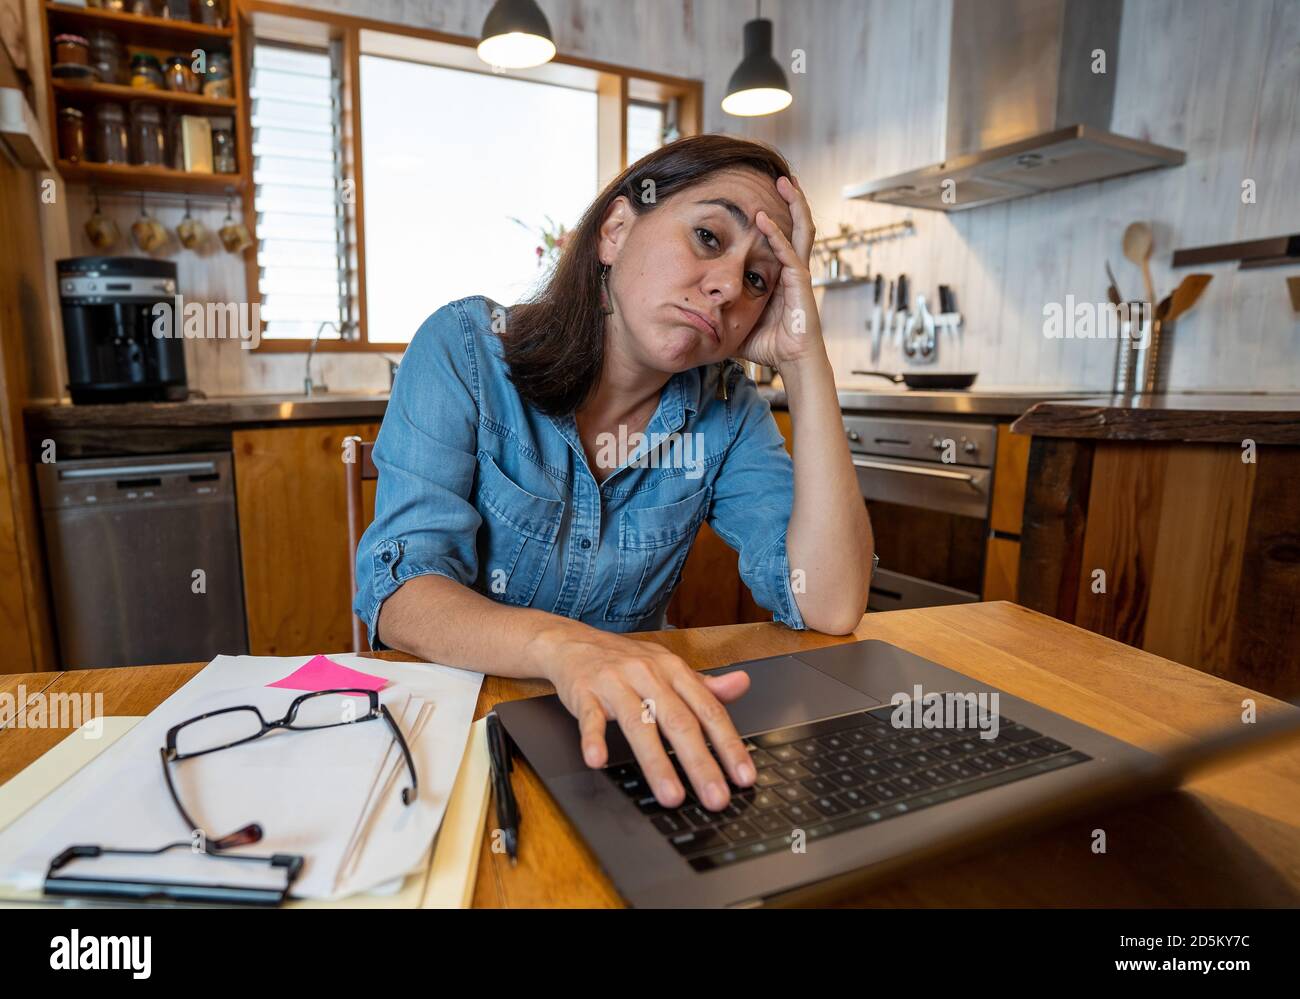 Femme d'affaires stressée travaillant à la maison sur un ordinateur portable, elle avait l'air inquiète, fatiguée et dépassée. Femme épuisée travaillant à distance pendant la prise de distance sociale Banque D'Images